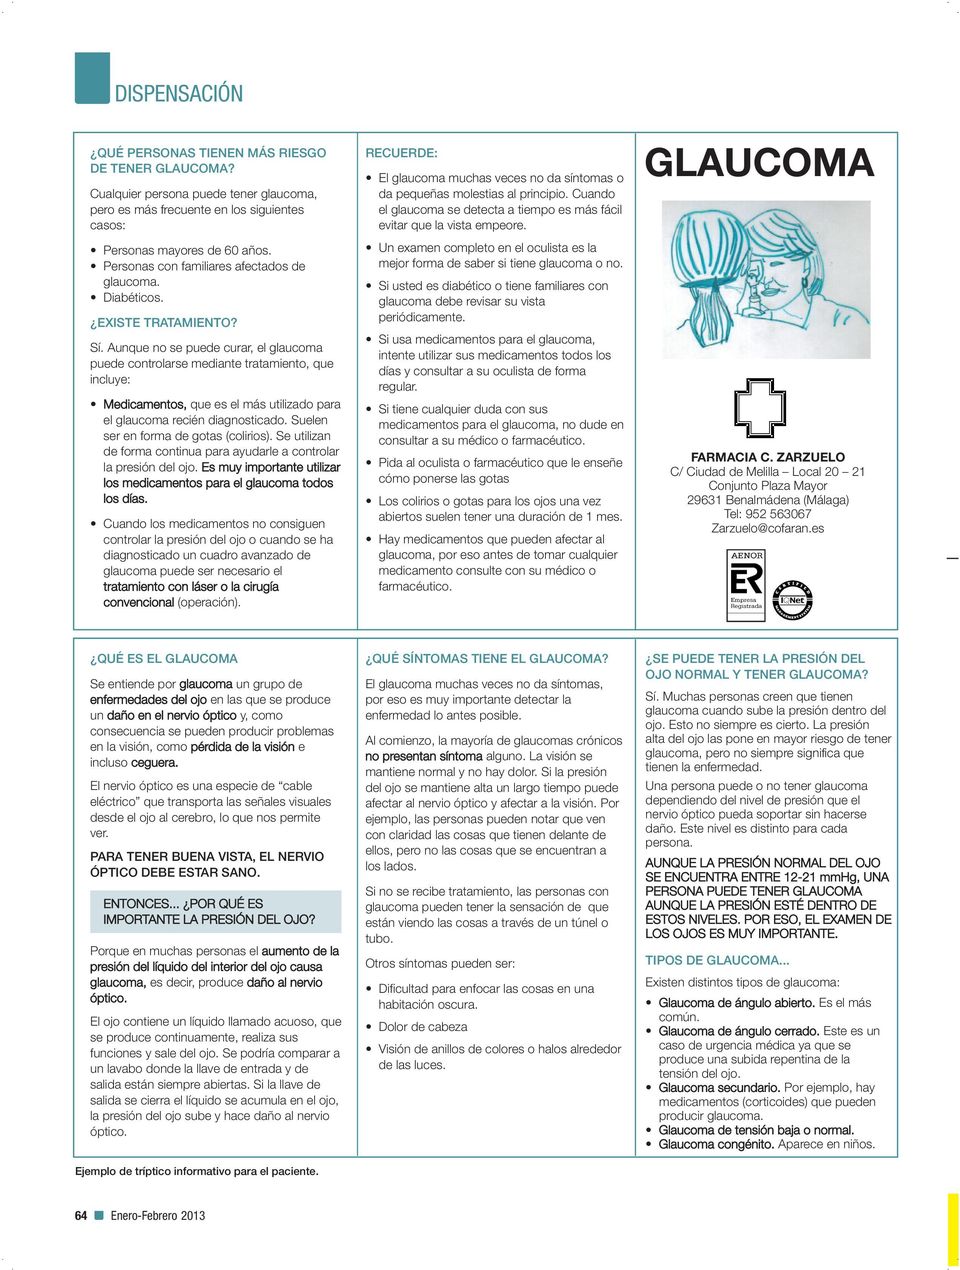 Aunque no se puede curar, el glaucoma puede controlarse mediante tratamiento, que incluye: Medicamentos, que es el más utilizado para el glaucoma recién diagnosticado.